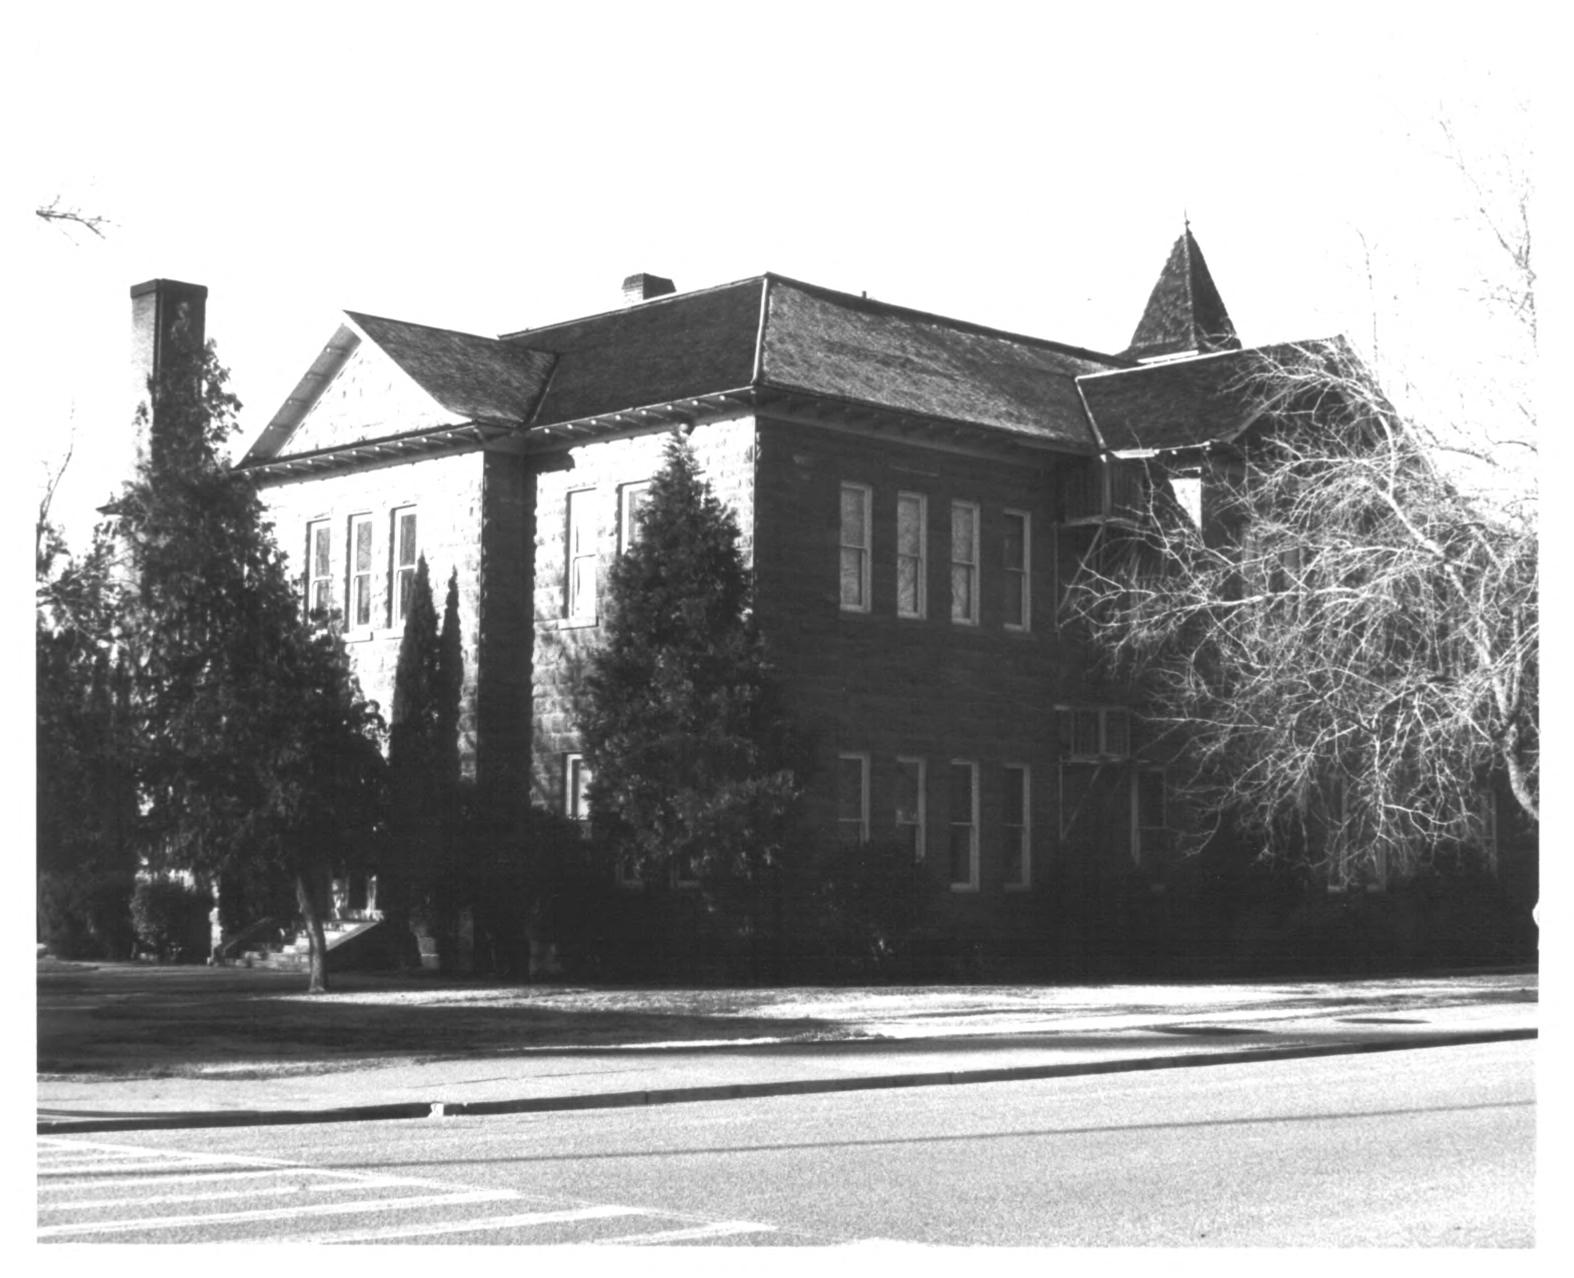 Woodward School in 1980